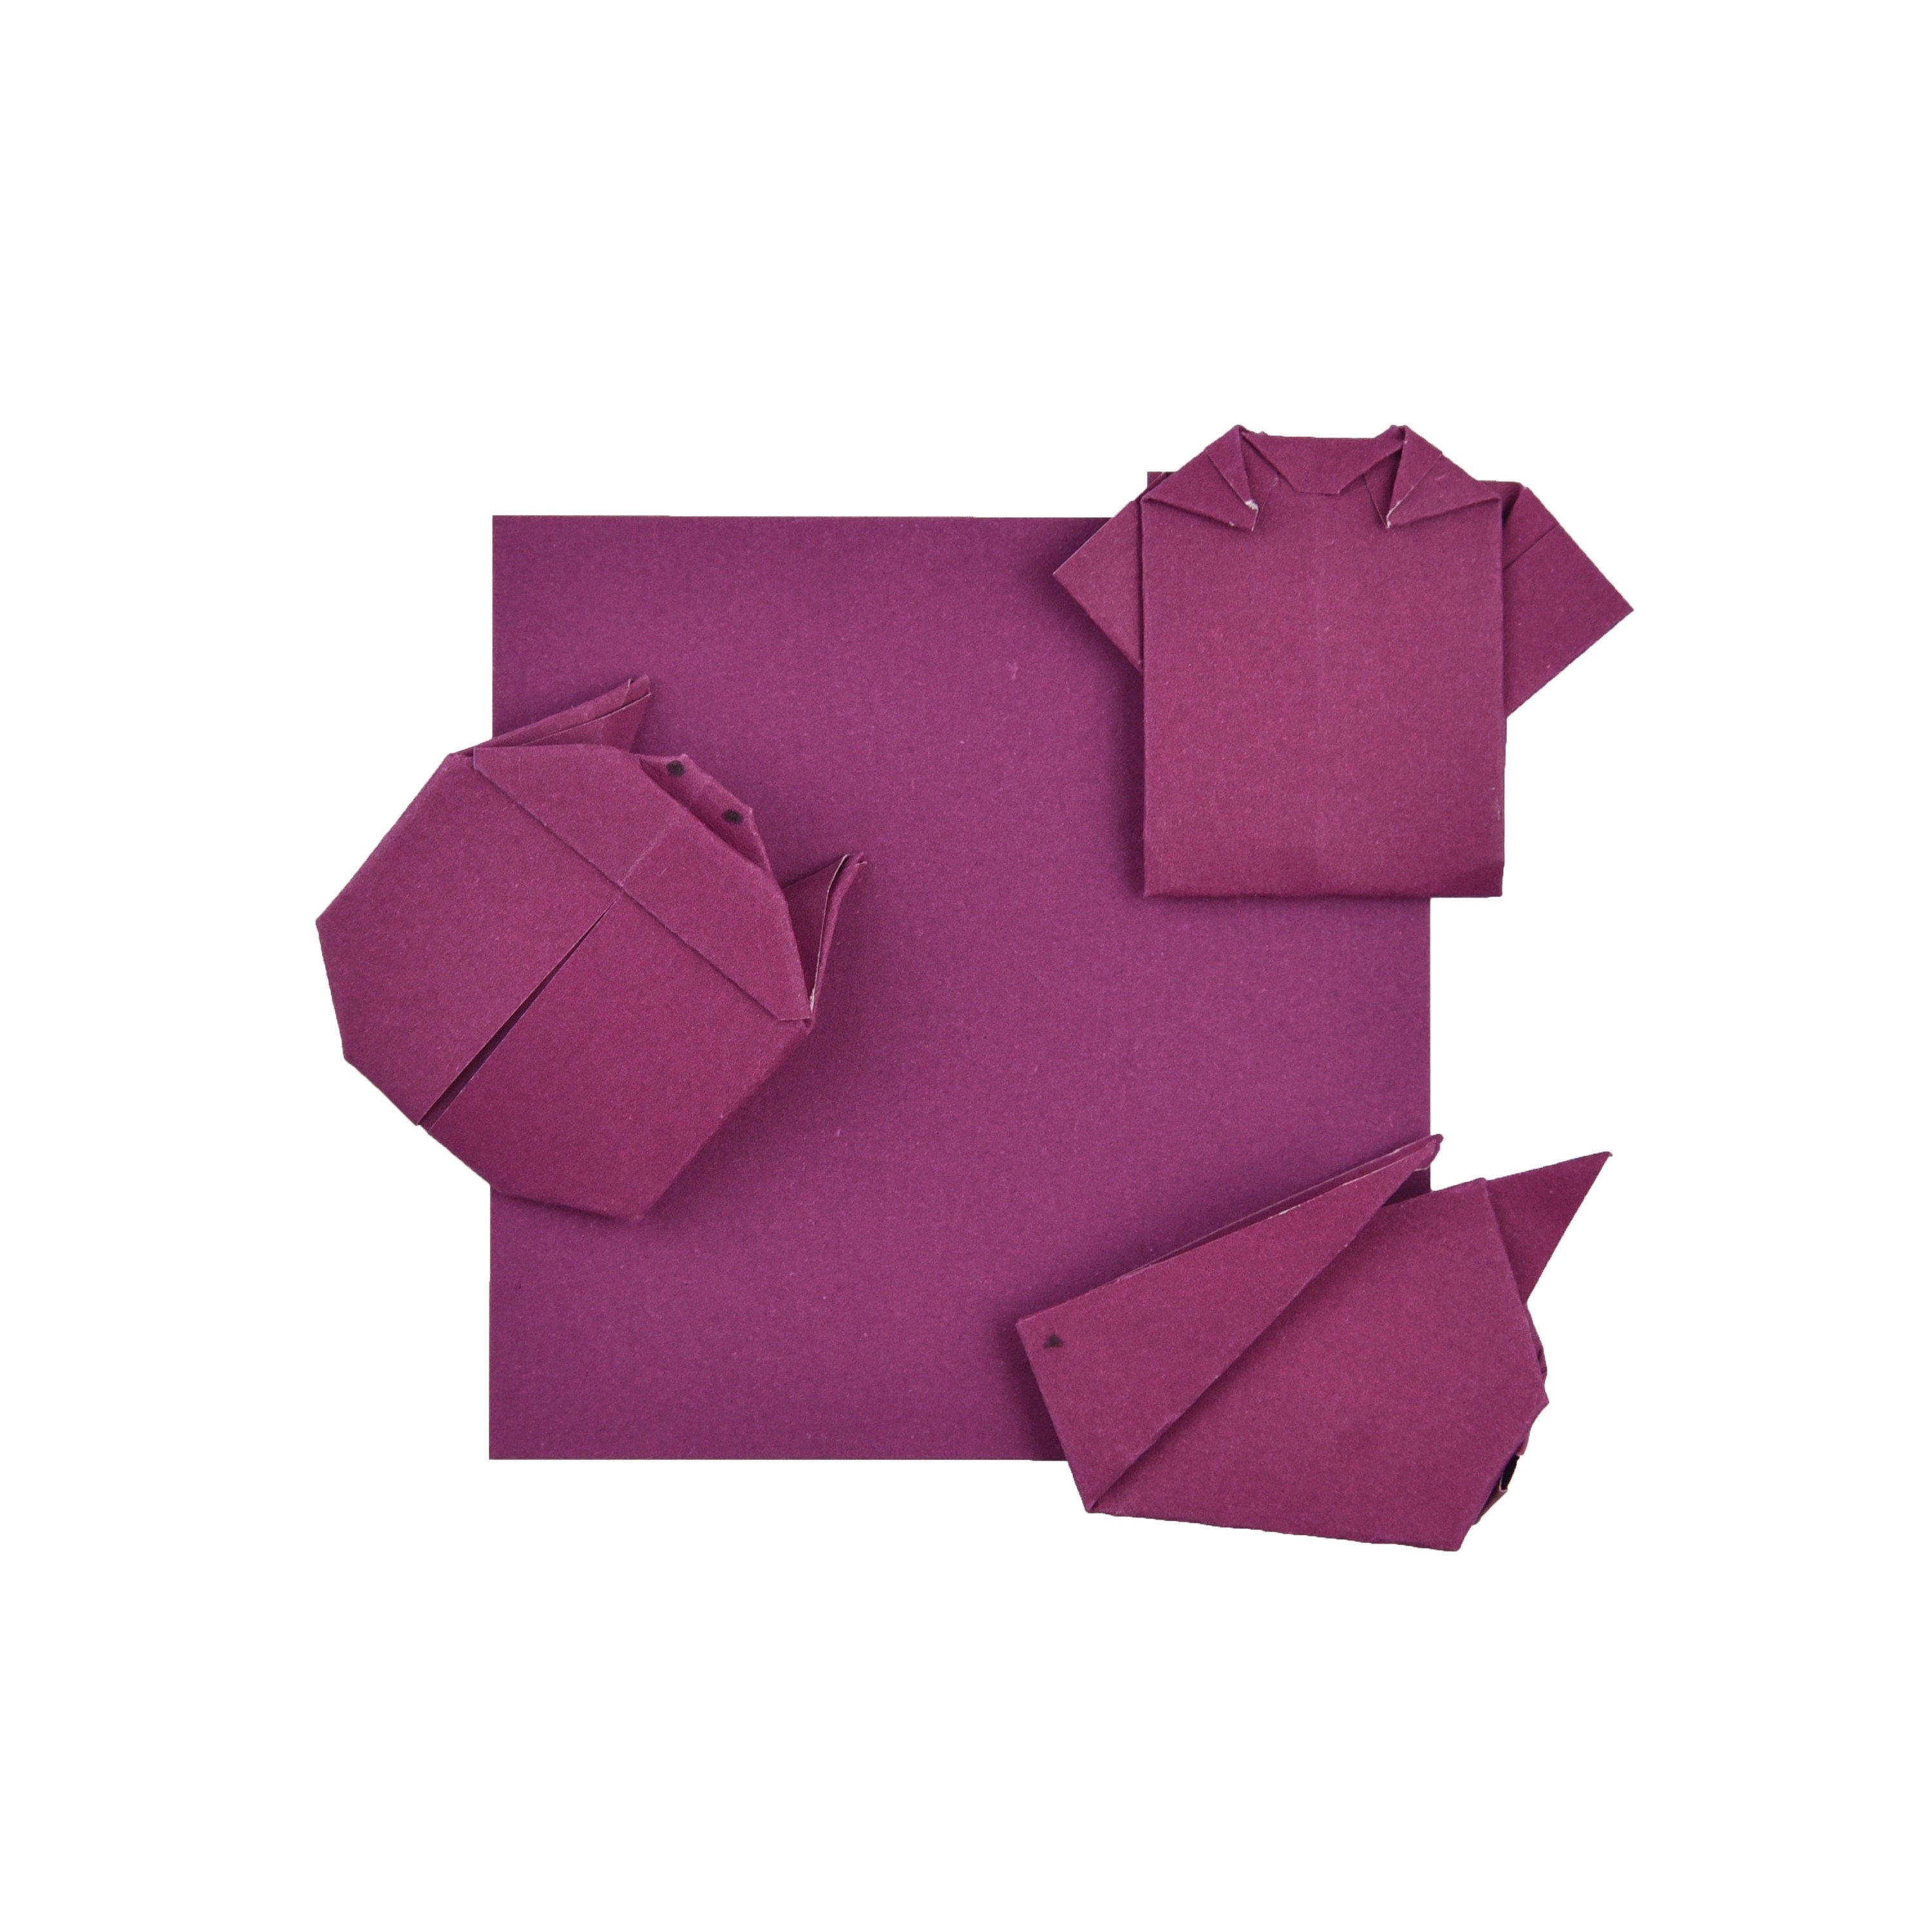 100 fogli di carta origami bordeaux - 3x3 pollici - confezione di carta quadrata per piegare, gru origami e decorazioni - S09